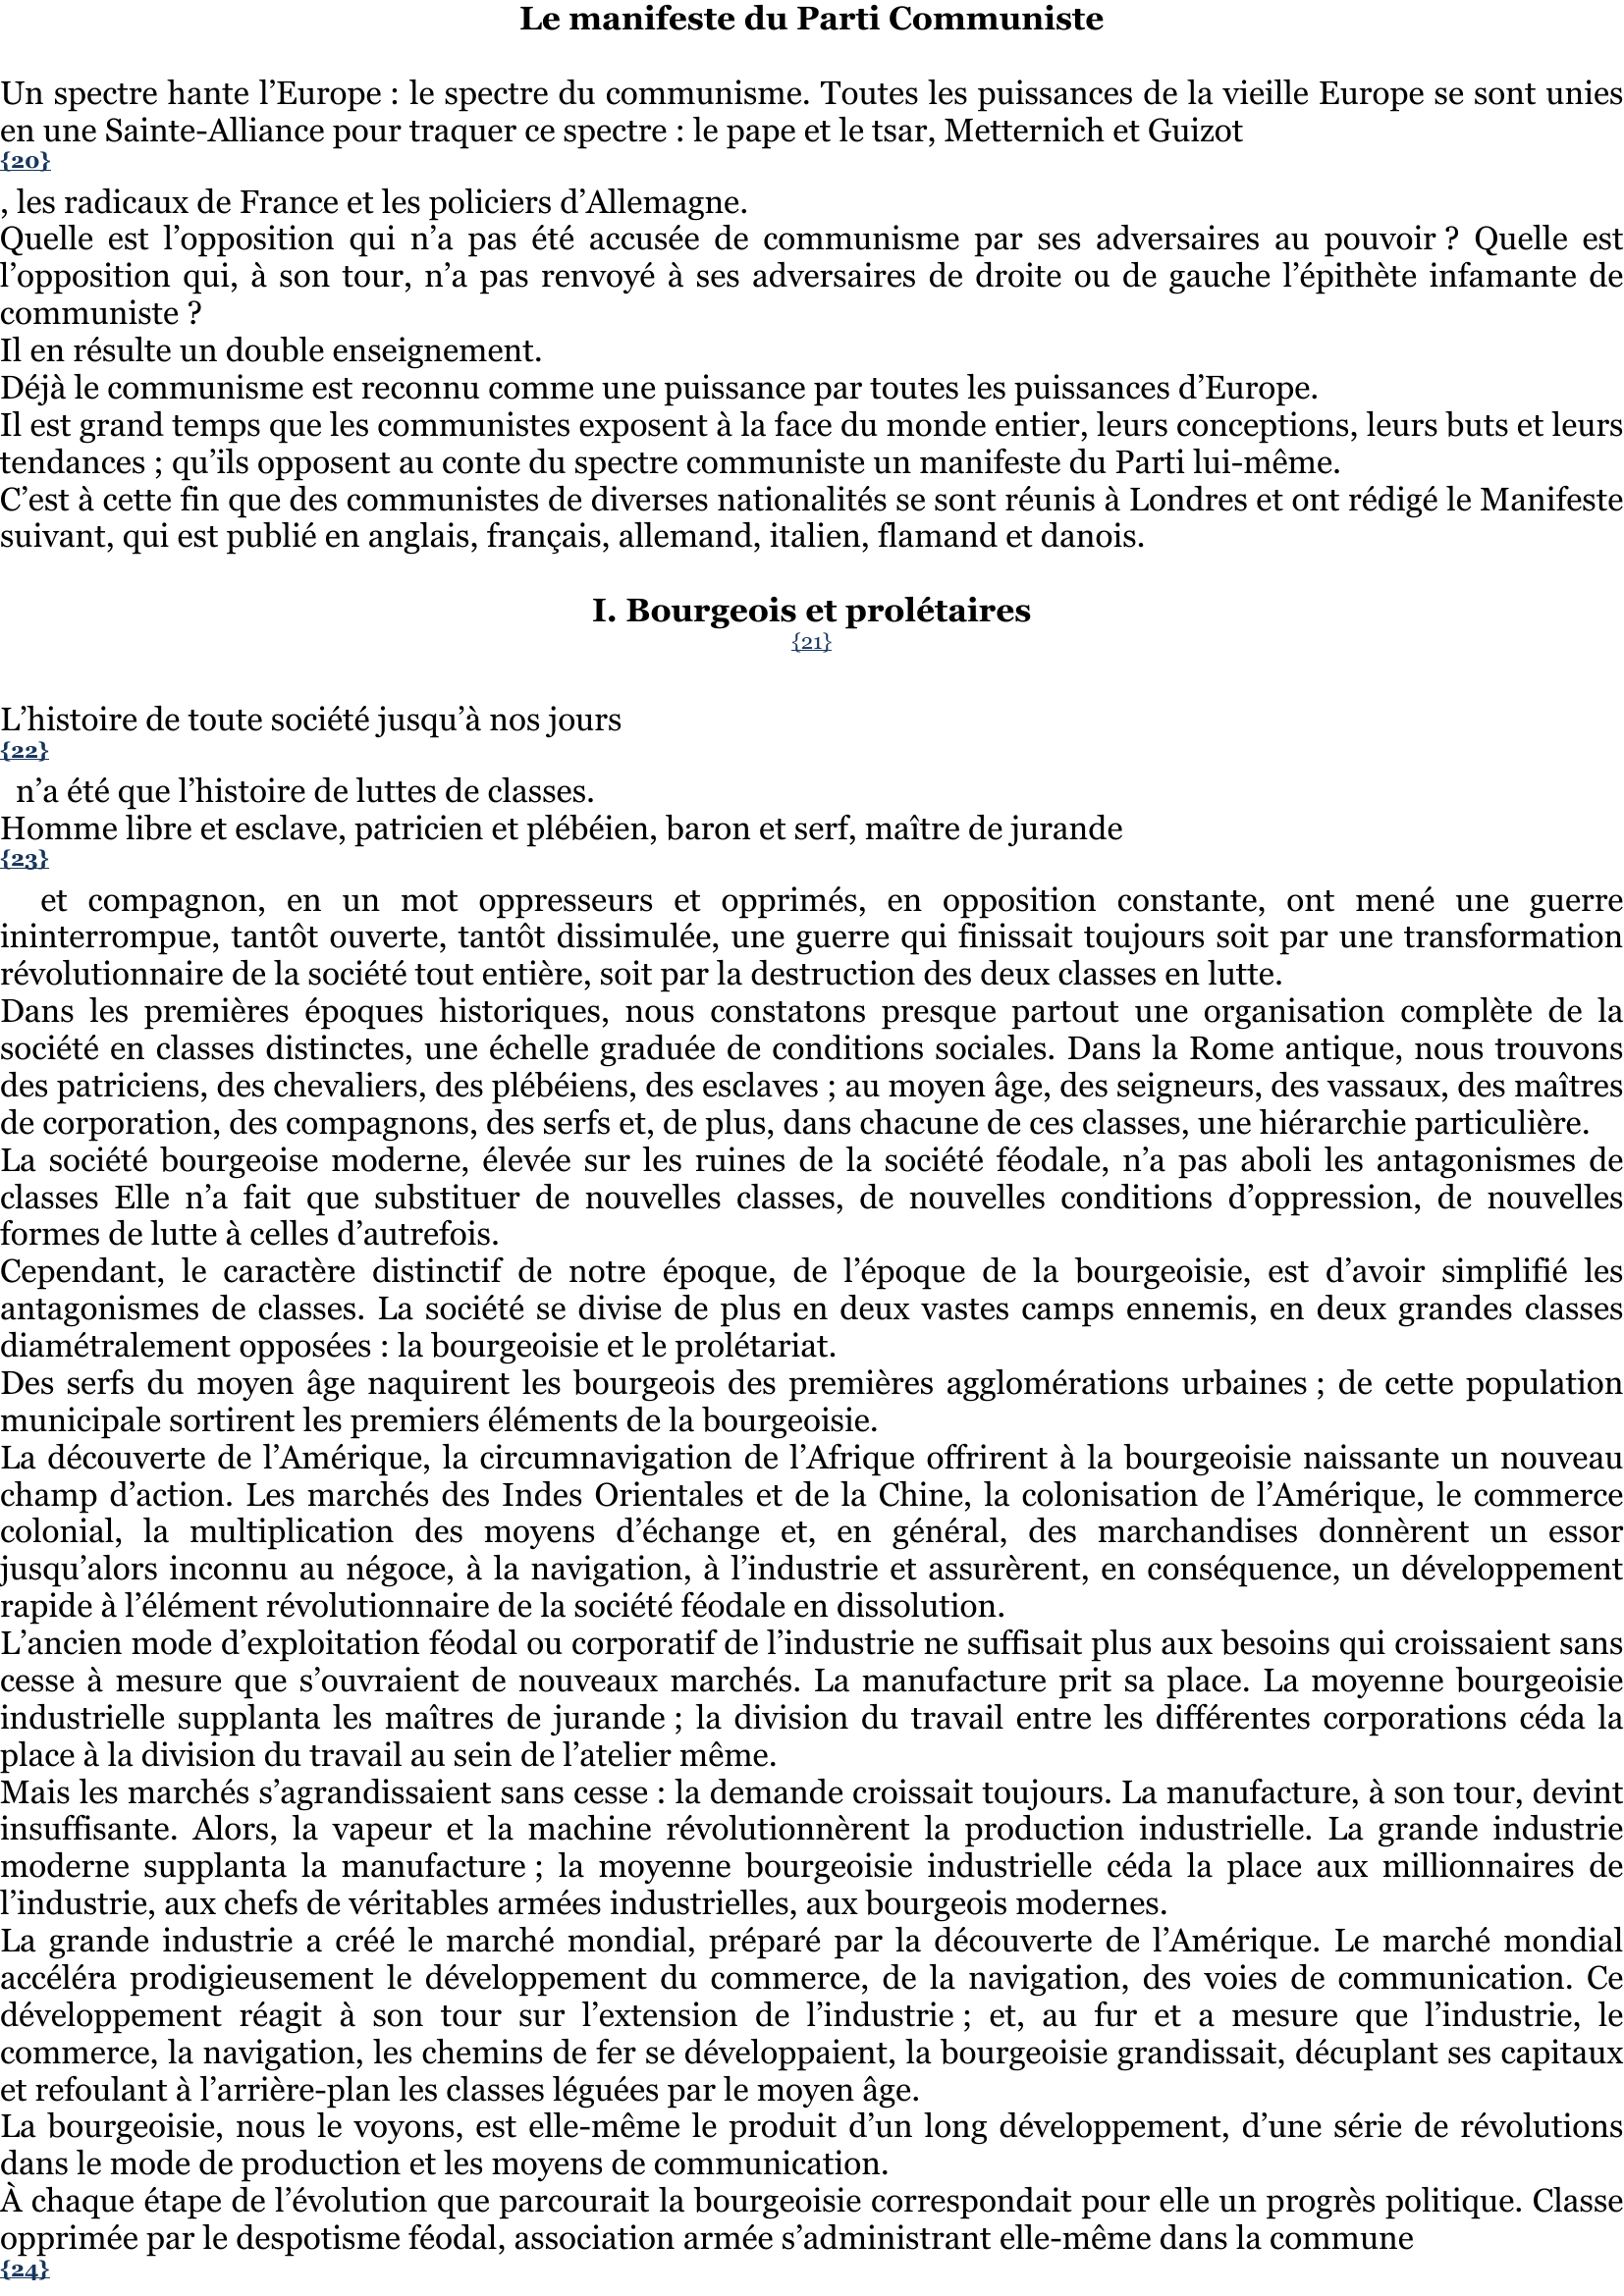 Prévisualisation du document Préface à l'édition italienne de 1893
 
Au lecteur italien.